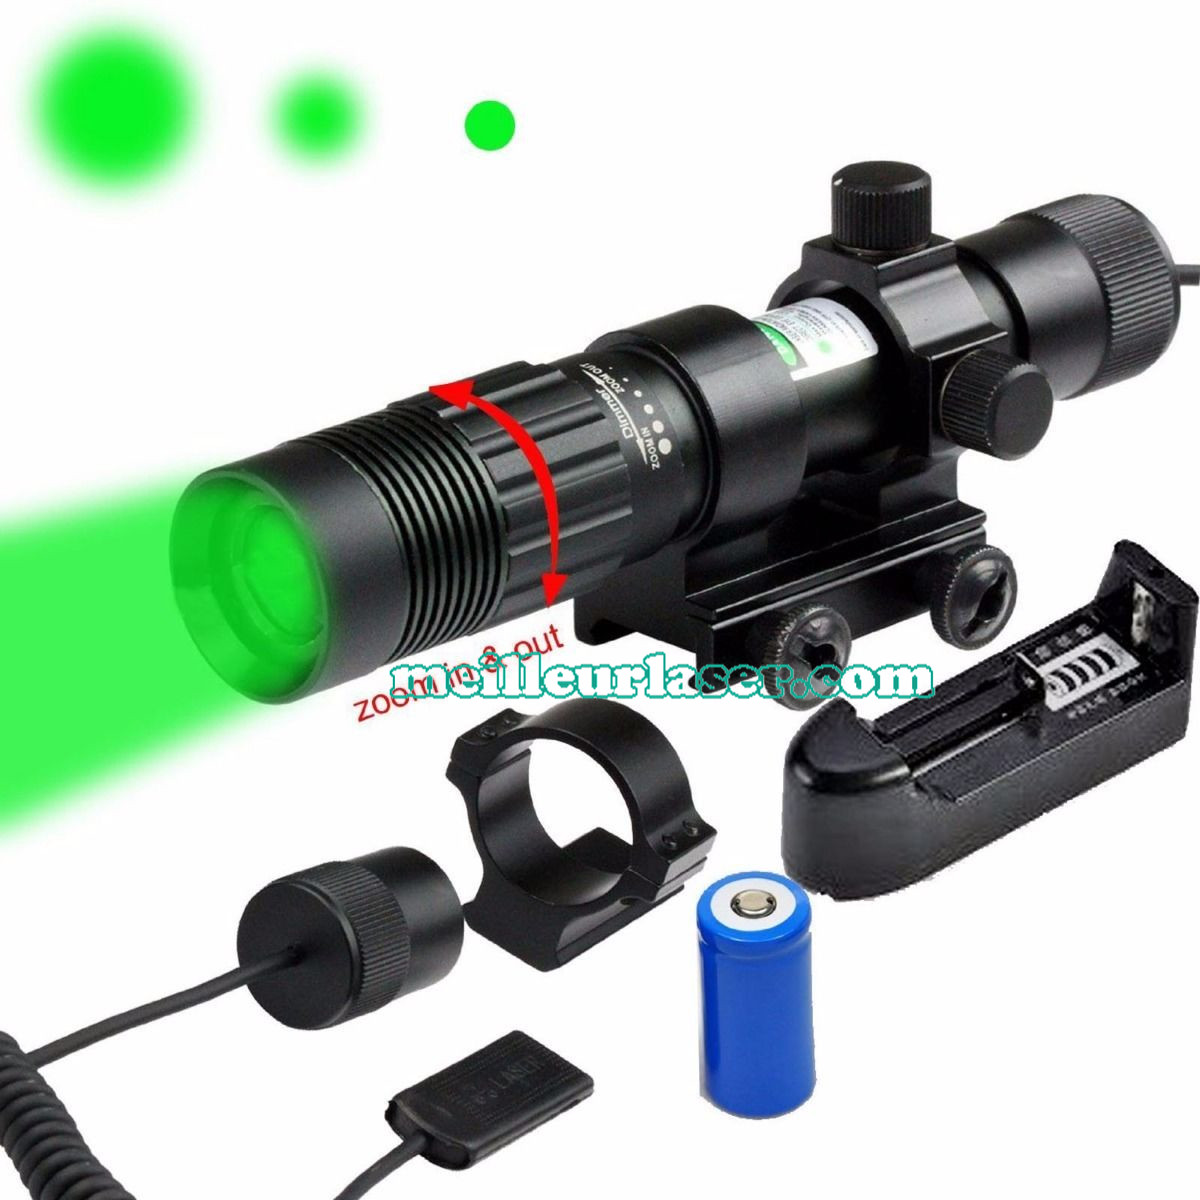  visee laser carabine